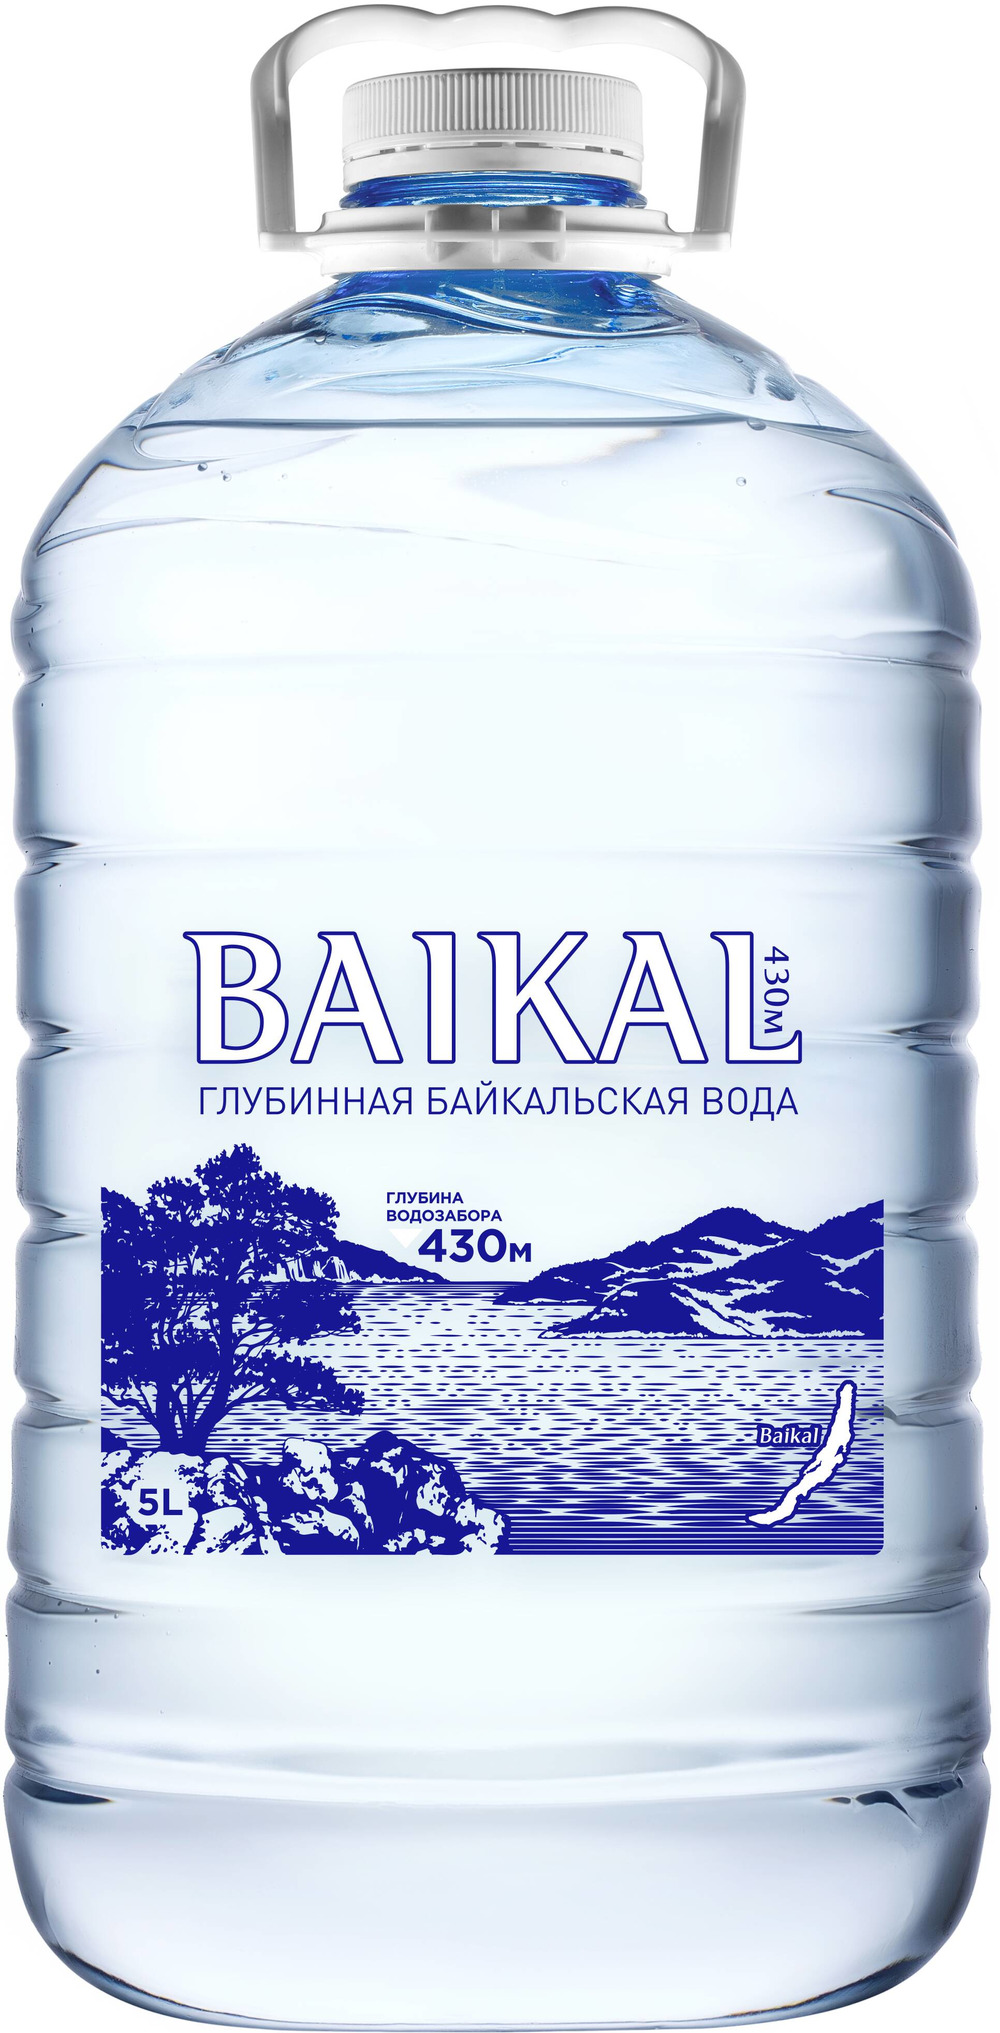 Минеральная вода байкал. Природная питьевая вода Байкальская глубинная baikal430 ПЭТ. Baikal 430 вода. Baikal вода 1.5л 430м. Байкальская глубинная вода Байкал 430.